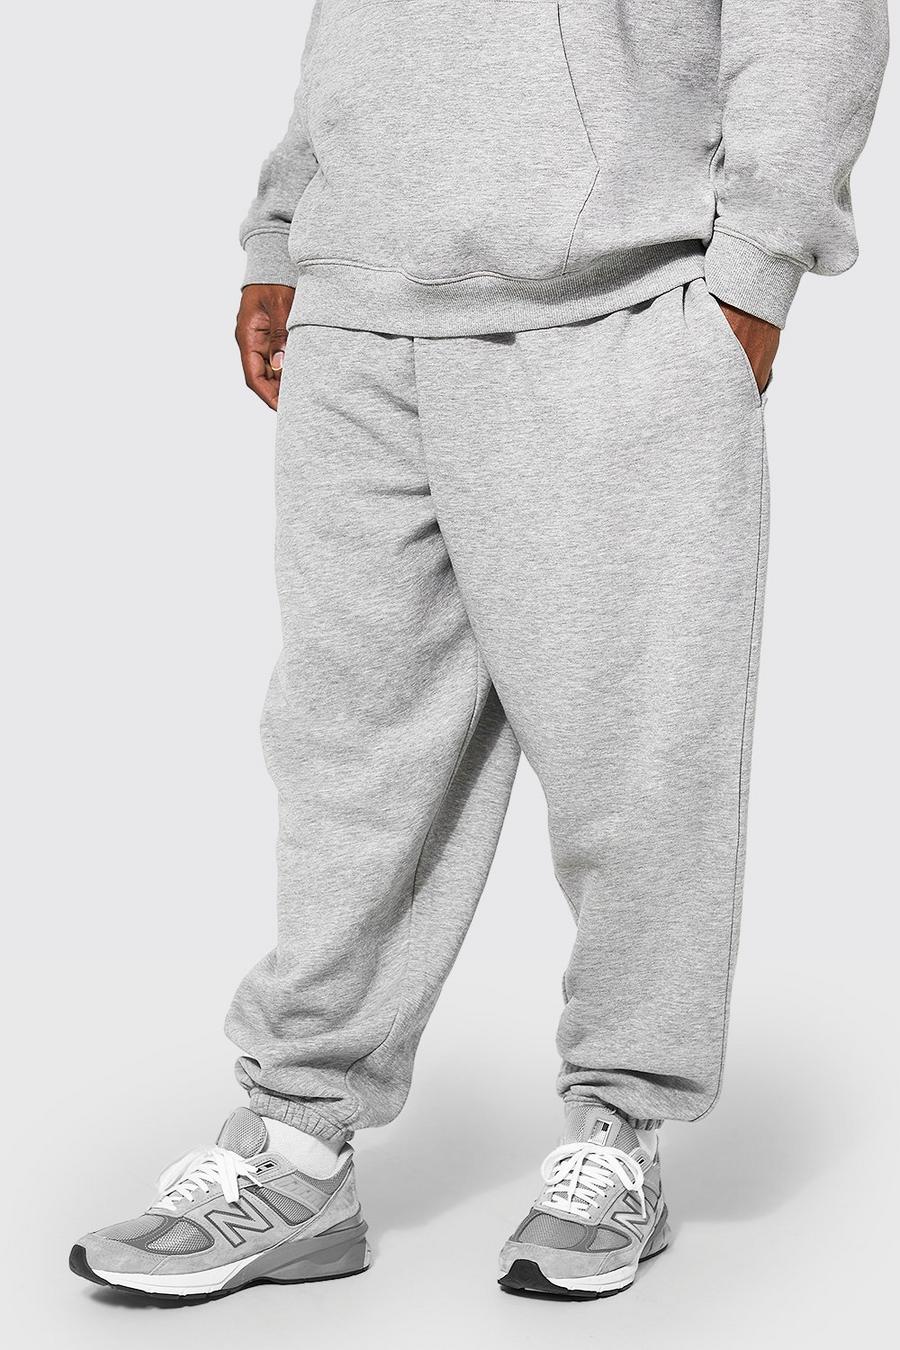 Pantalón deportivo Plus básico holgado con algodón ecológico, Grey marl grigio